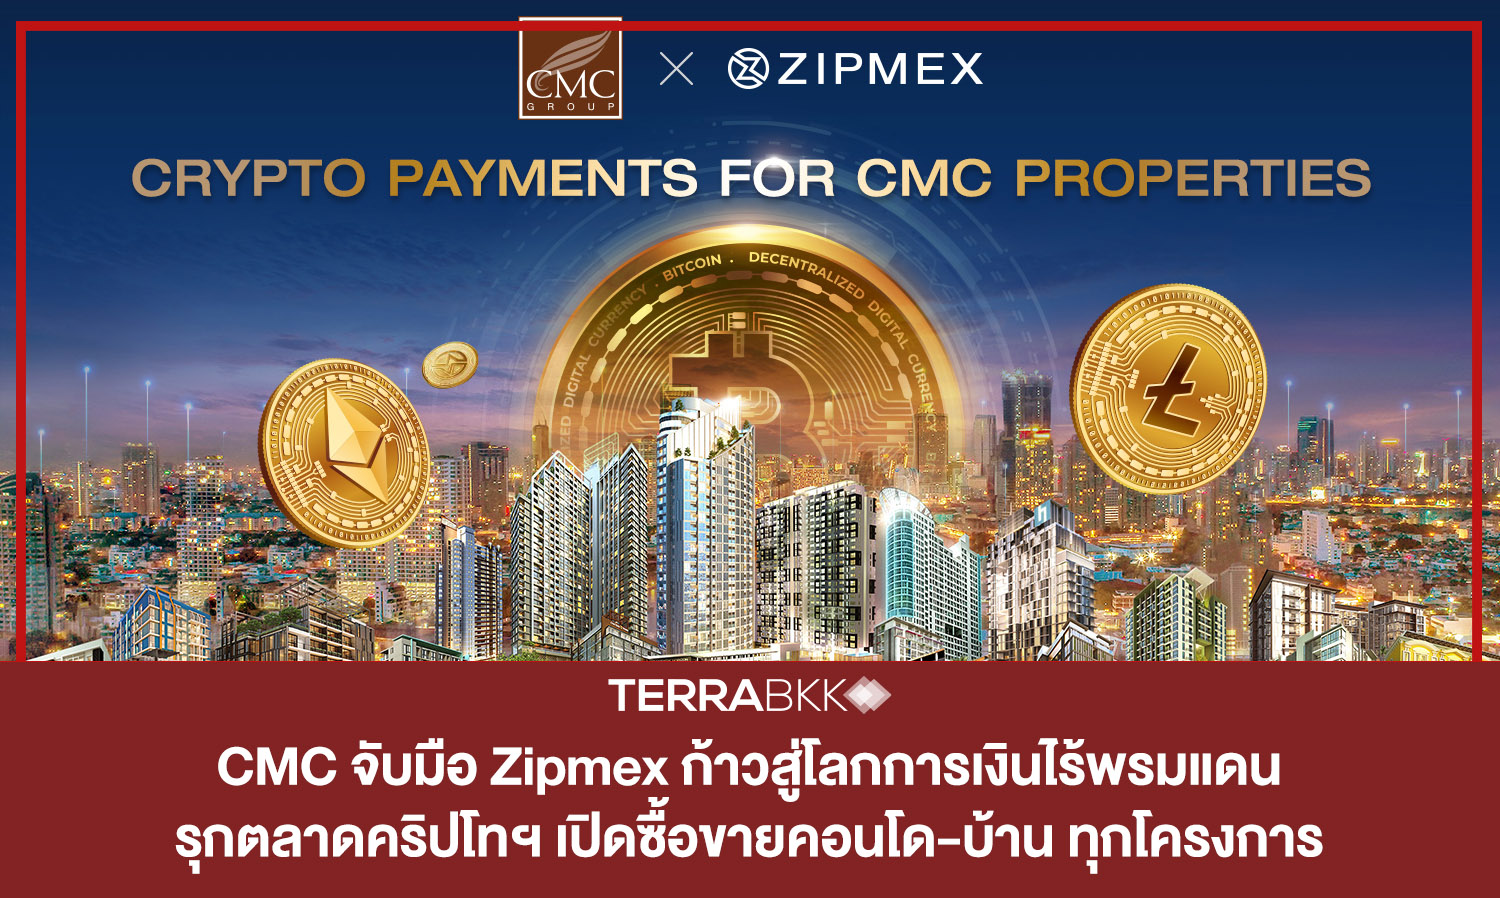 CMC จับมือ Zipmex ก้าวสู่โลกการเงินไร้พรมแดน  รุกตลาดคริปโทฯ เปิดซื้อขายคอนโด-บ้าน รับทุกสกุลเหรียญกับทุกโครงการ